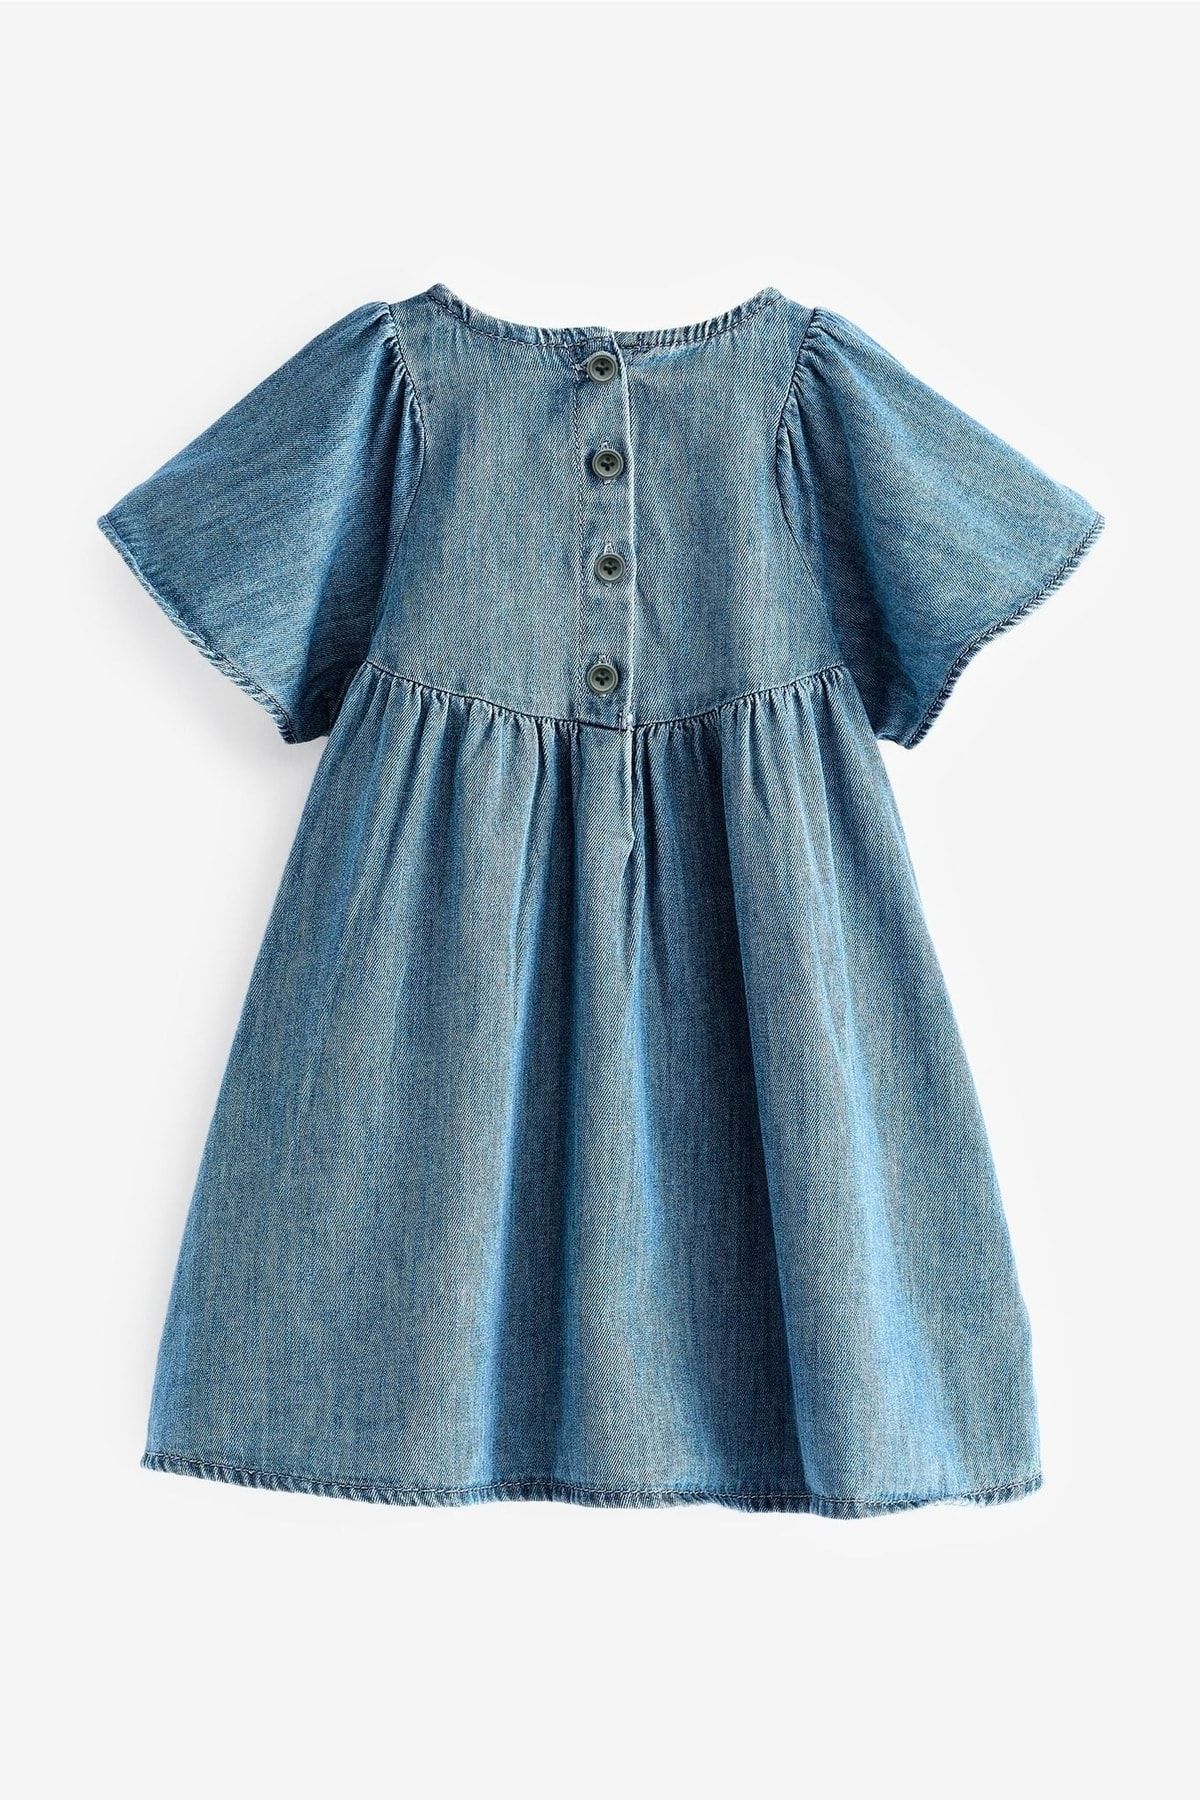 magu Kız Çocuk Mavi Denim Elbise